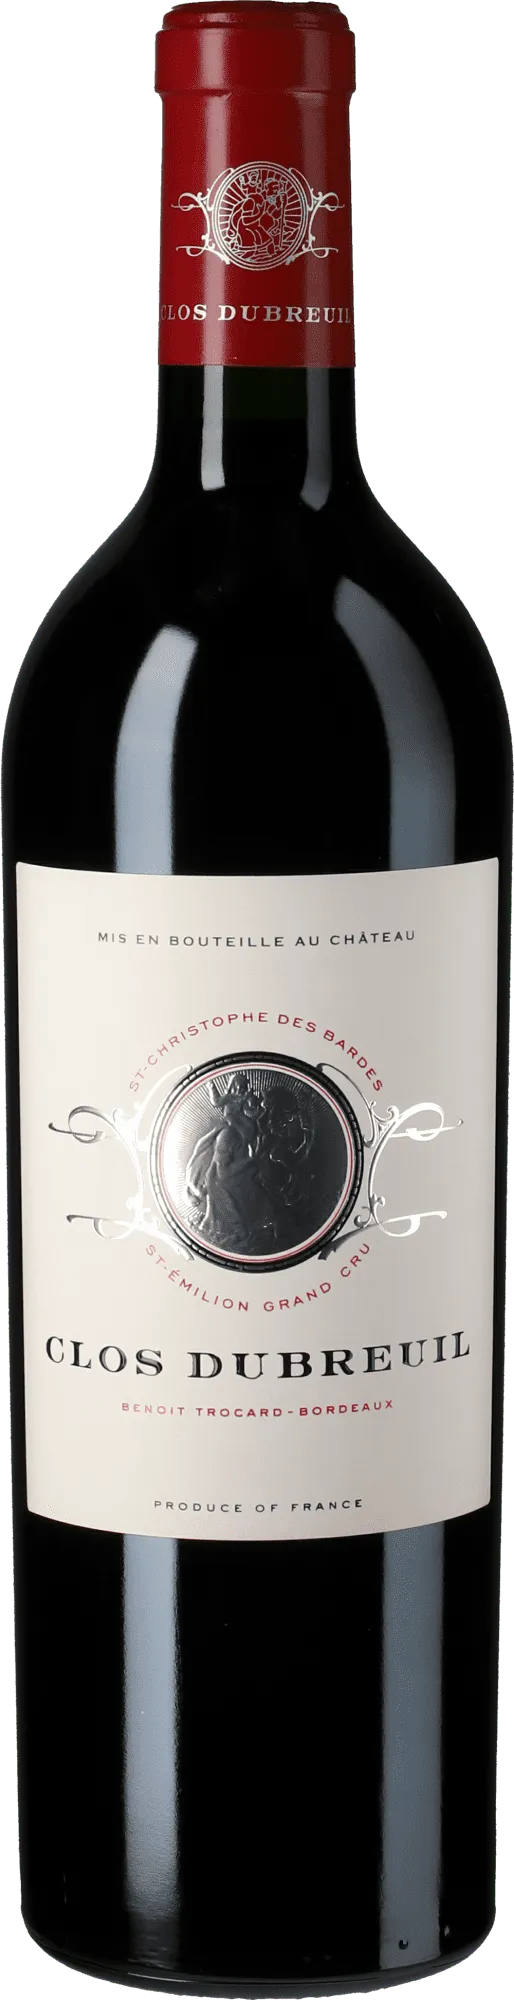 Bottle of Clos Dubreuil Saint-Émilion Grand Cruwith label visible